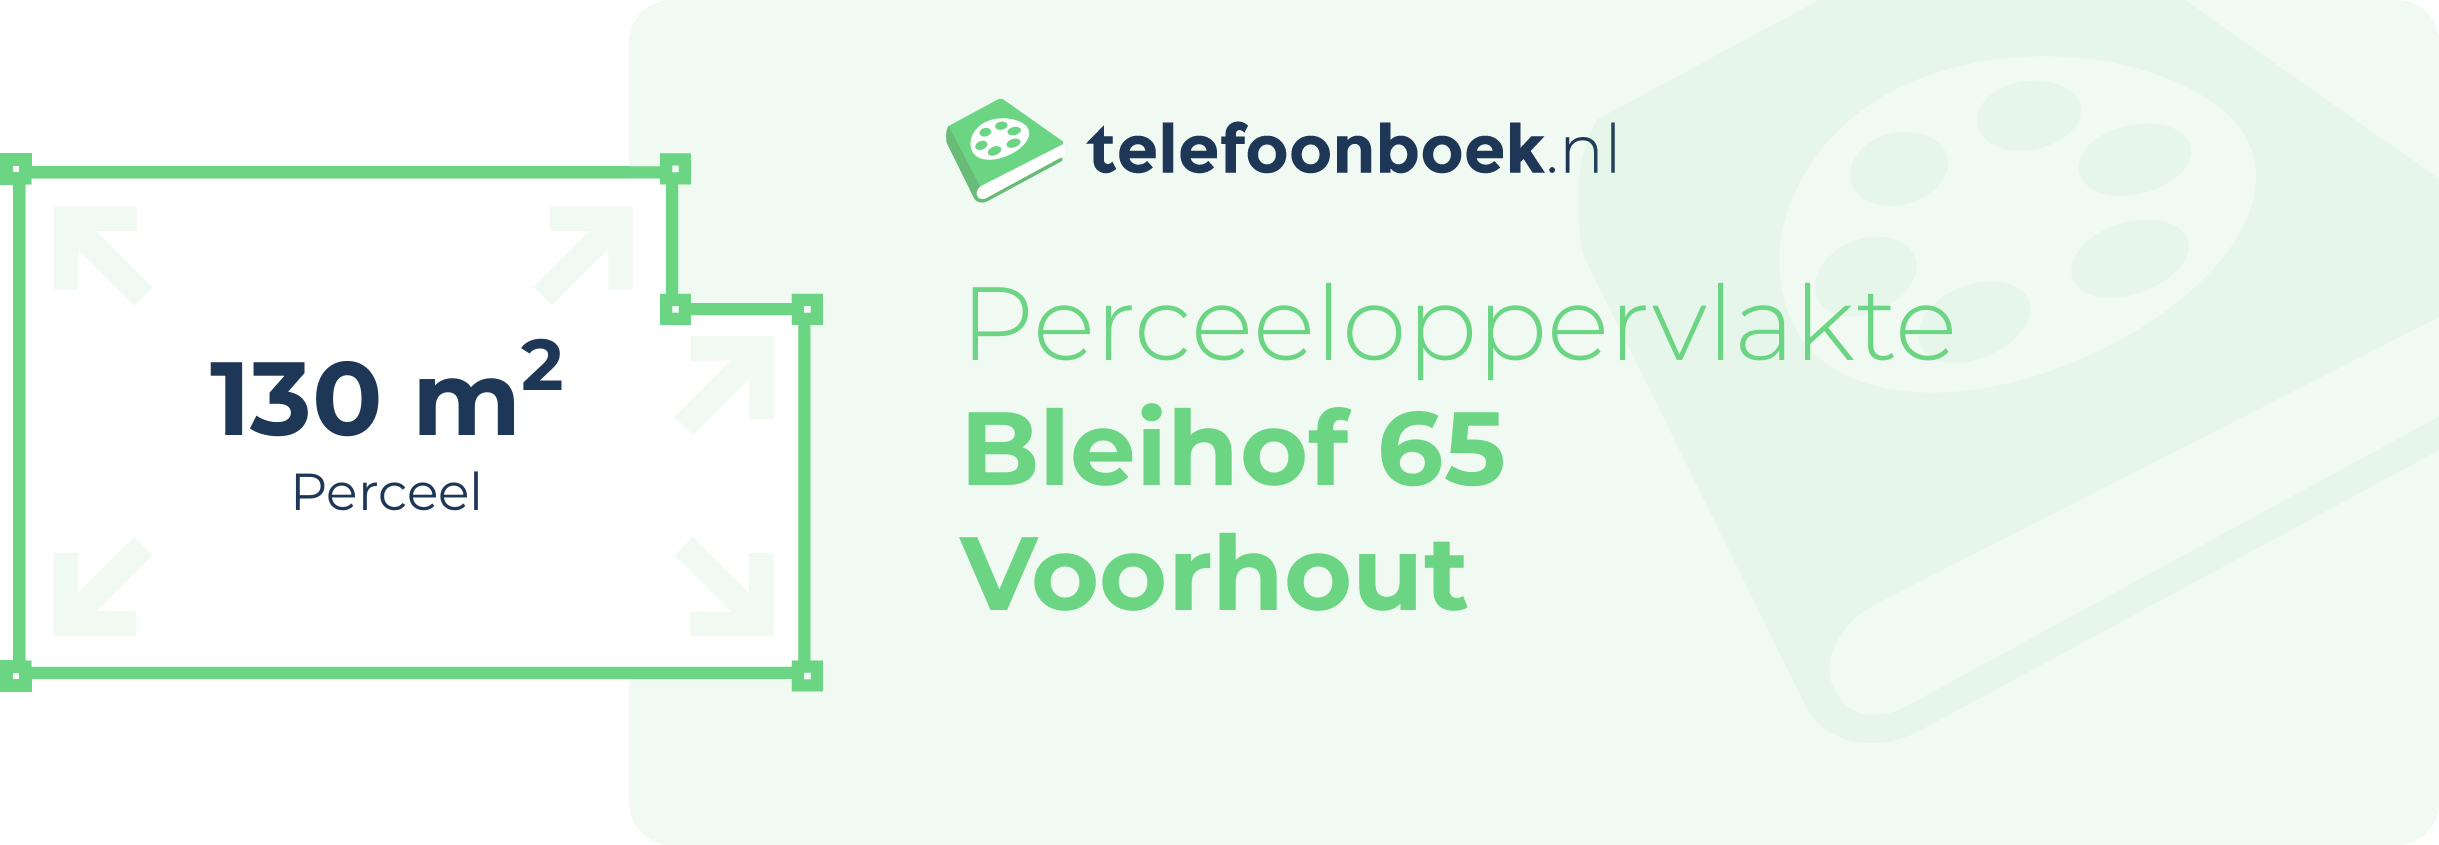 Perceeloppervlakte Bleihof 65 Voorhout